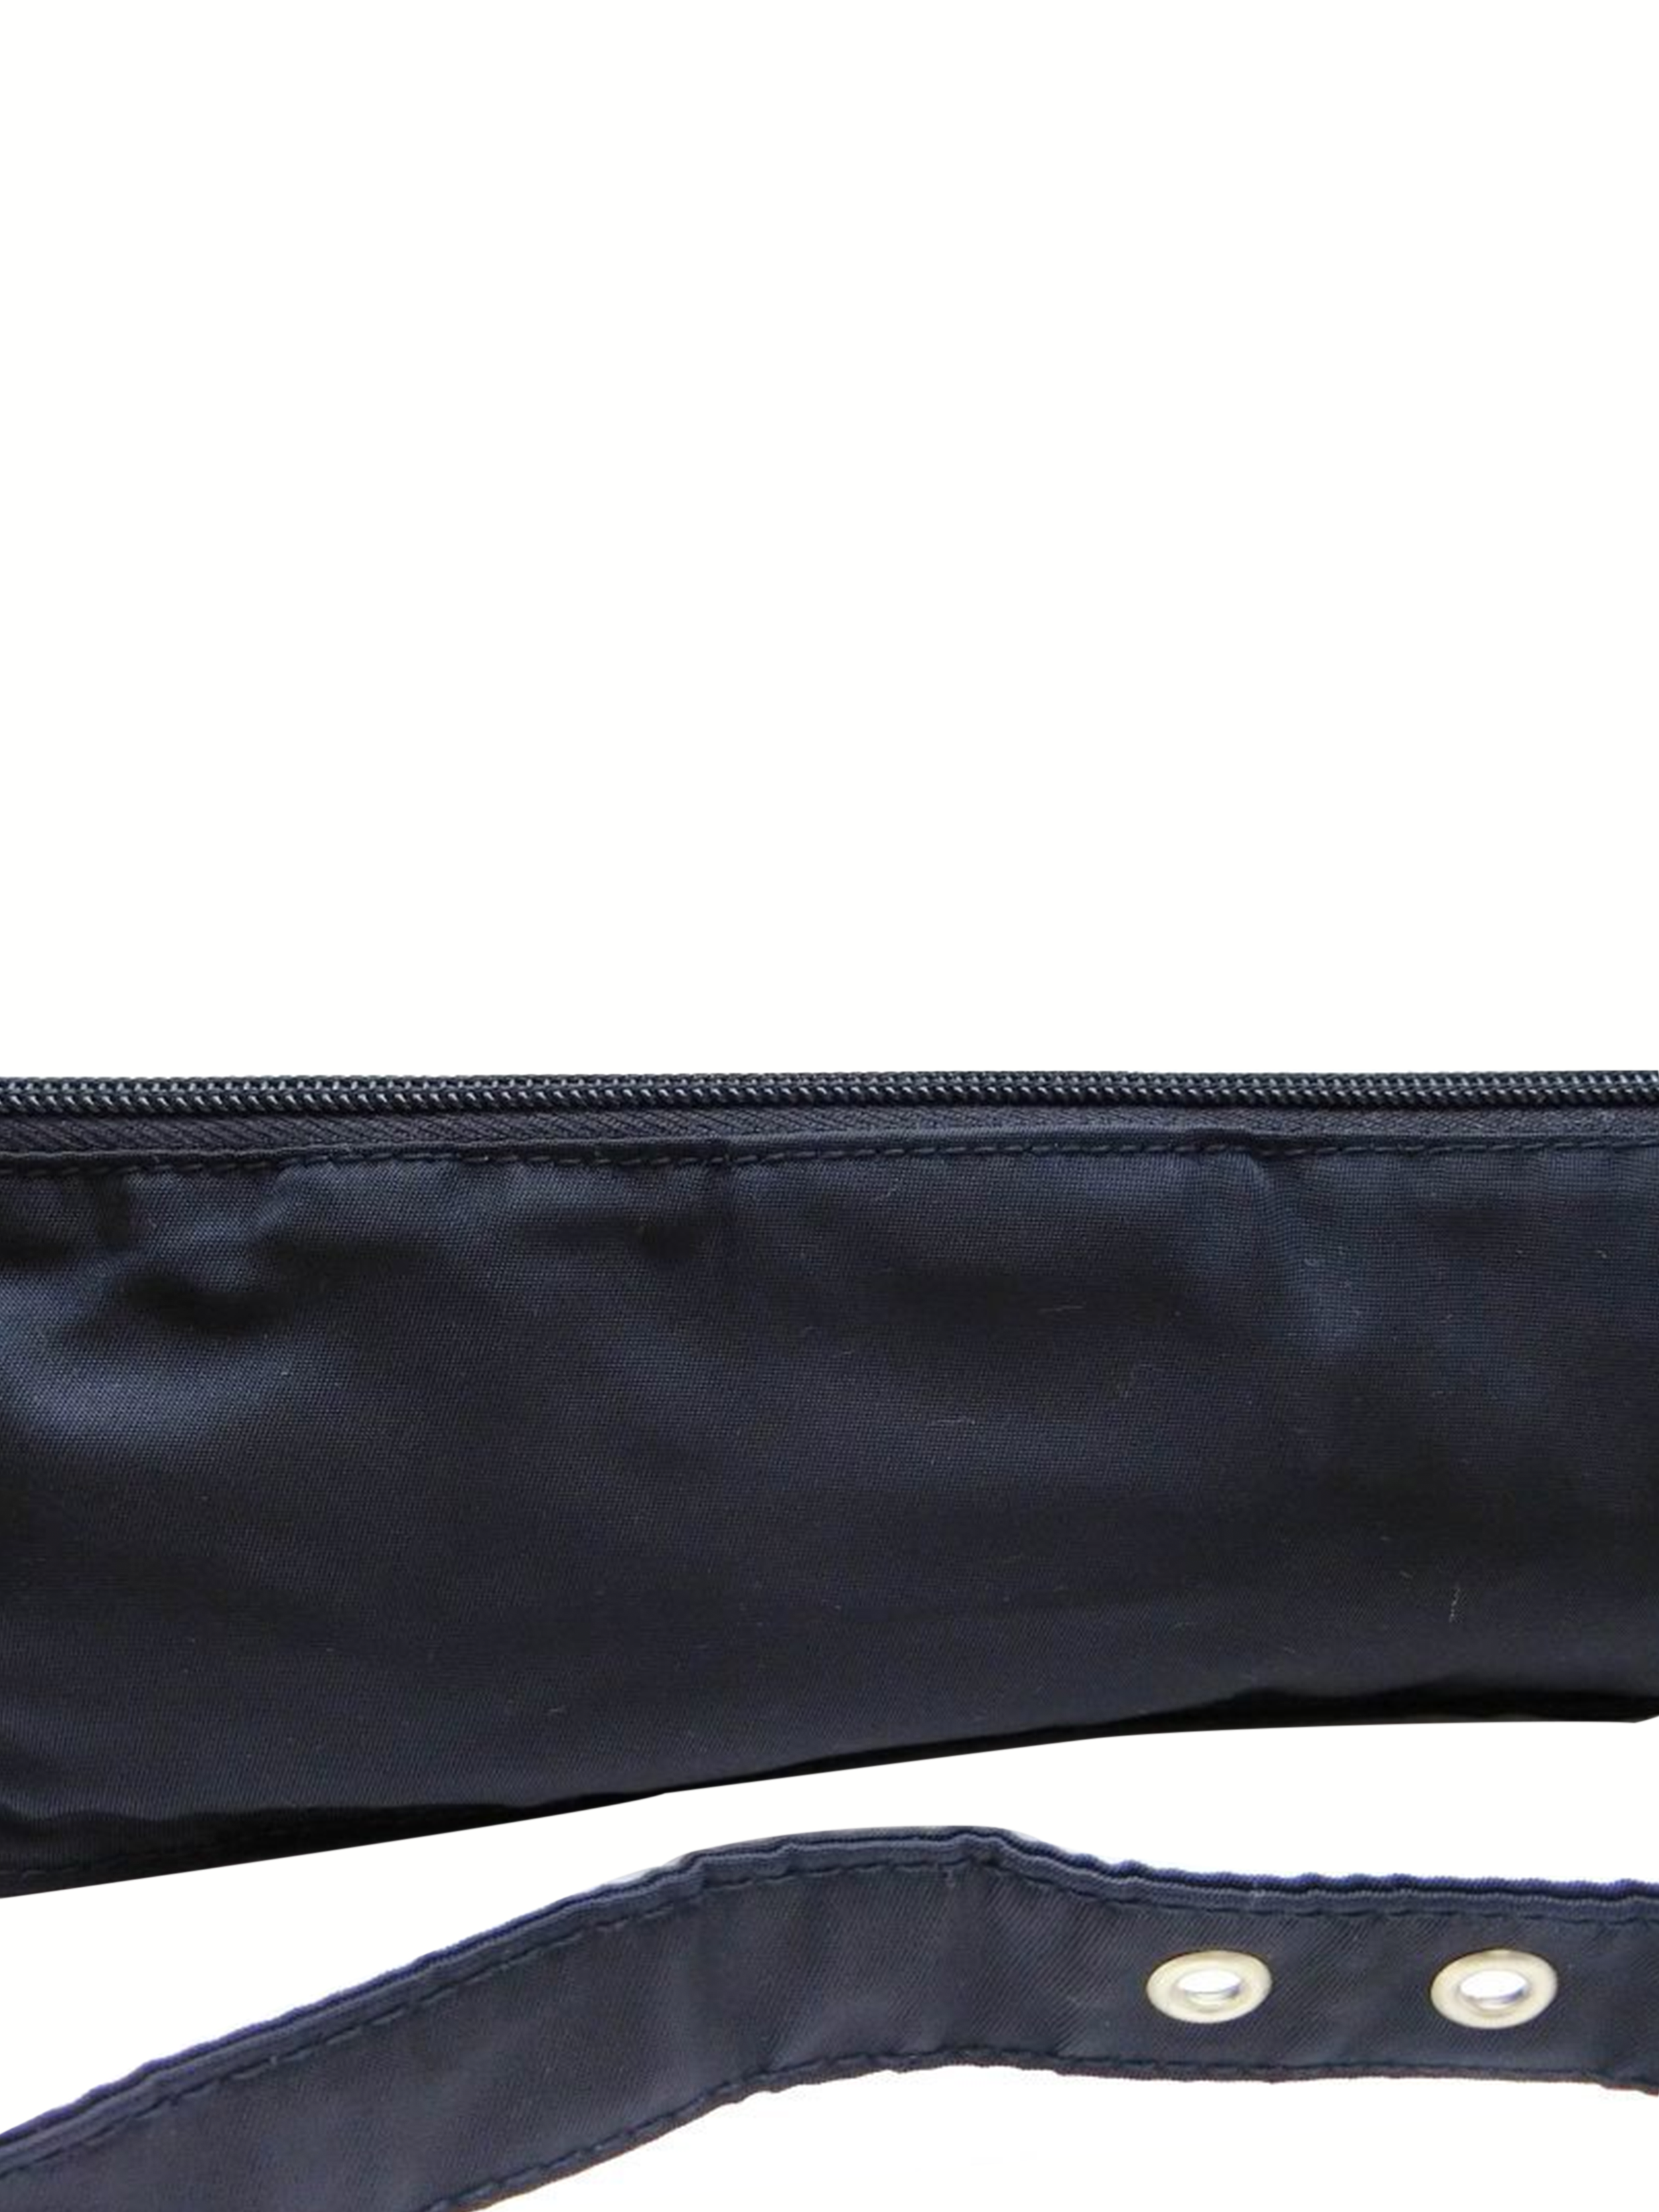 Prada 2000s Black Nylon Mini Waist Bag